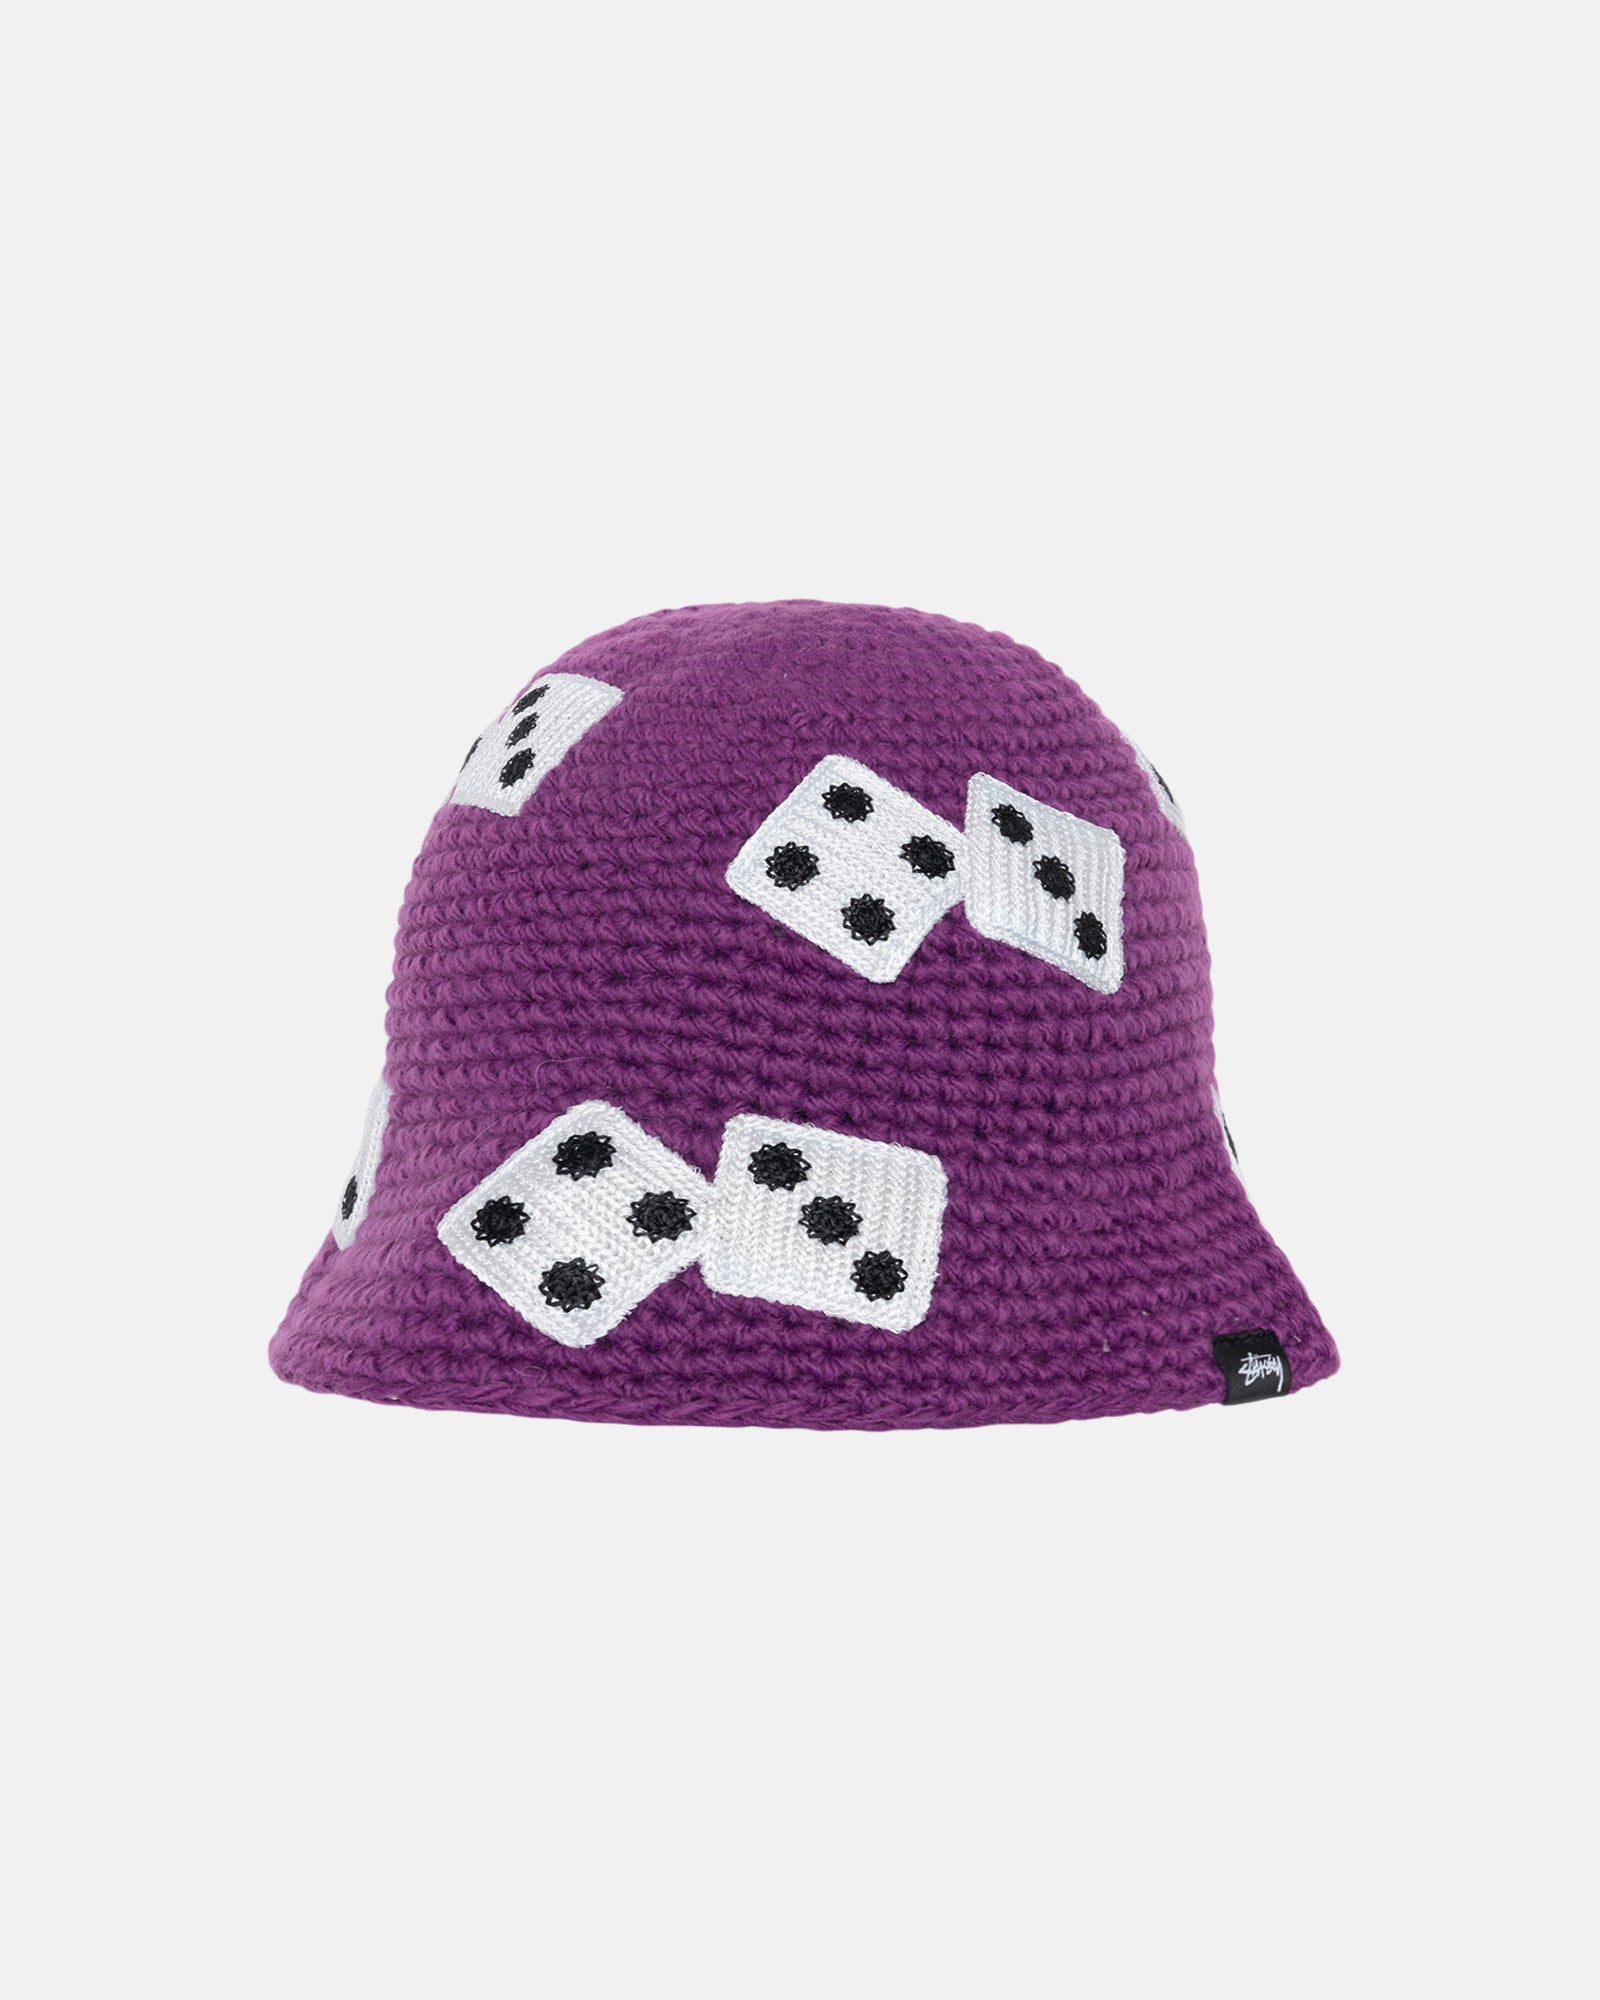 Stüssy Bucket Hat Dice Knit Purple Headwear